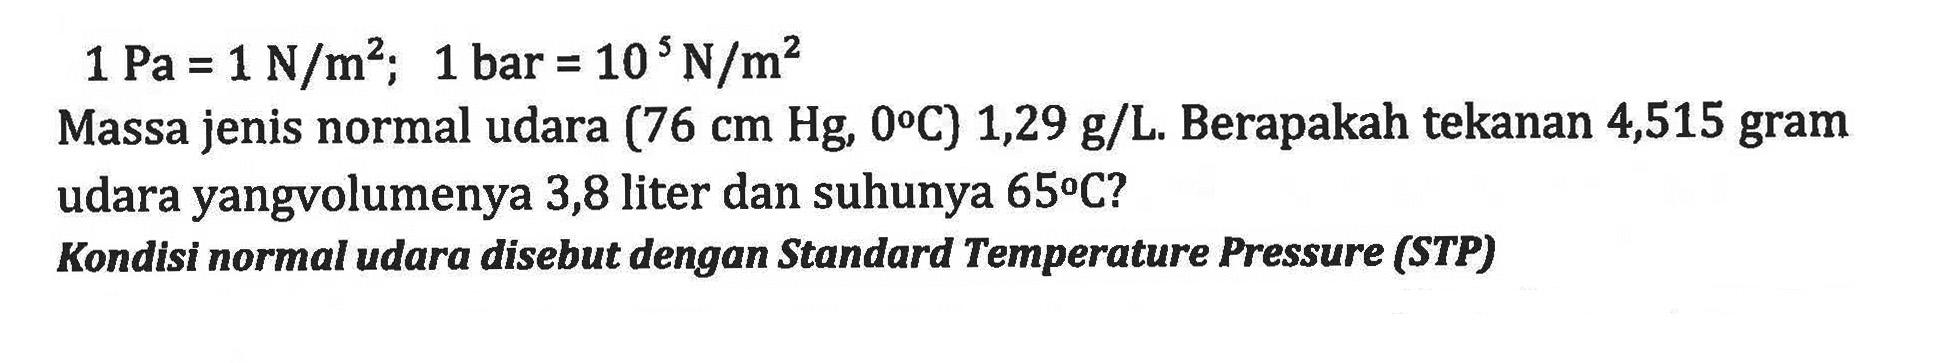 1 Pa = 1 N/m^2; 1 bar = 10 N/m^2 Massa jenis normal udara (76 cm Hg, 0 C) 1,29 g/L.Berapakah tekanan 4,515 gram udara yangv olumenya 3,8 liter dan suhunya 65 C? Kondisi normal udara disebut dengan Standard Temperature Pressure (STP) g/L.